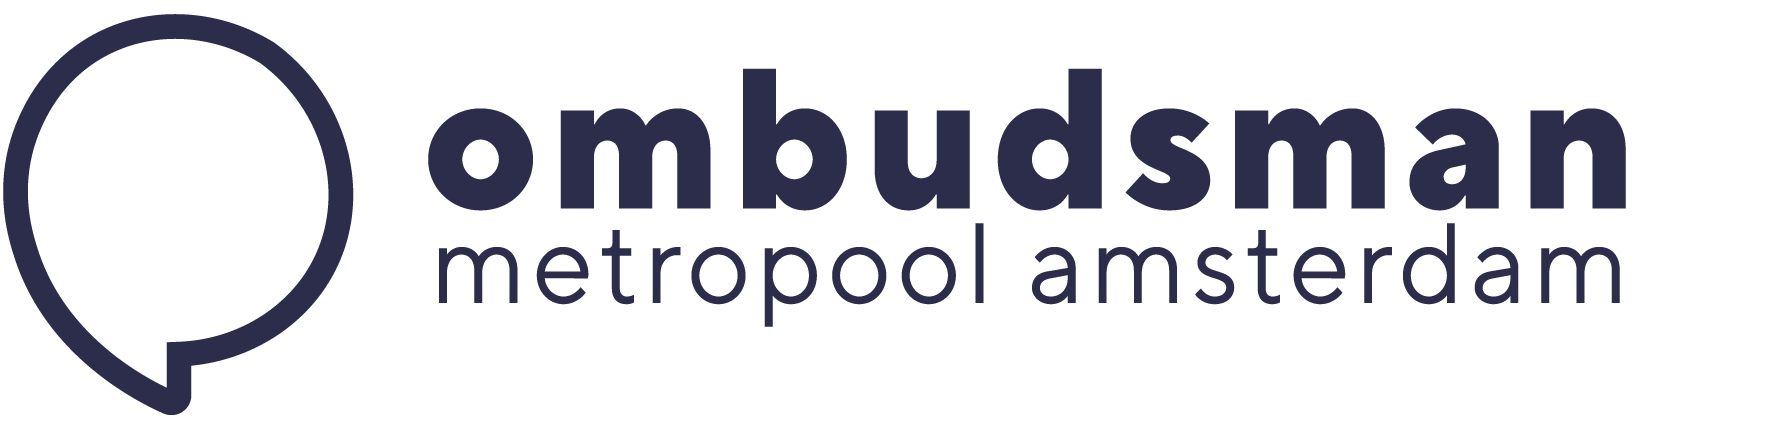 logo Ombudsman Metropool Amsterdam